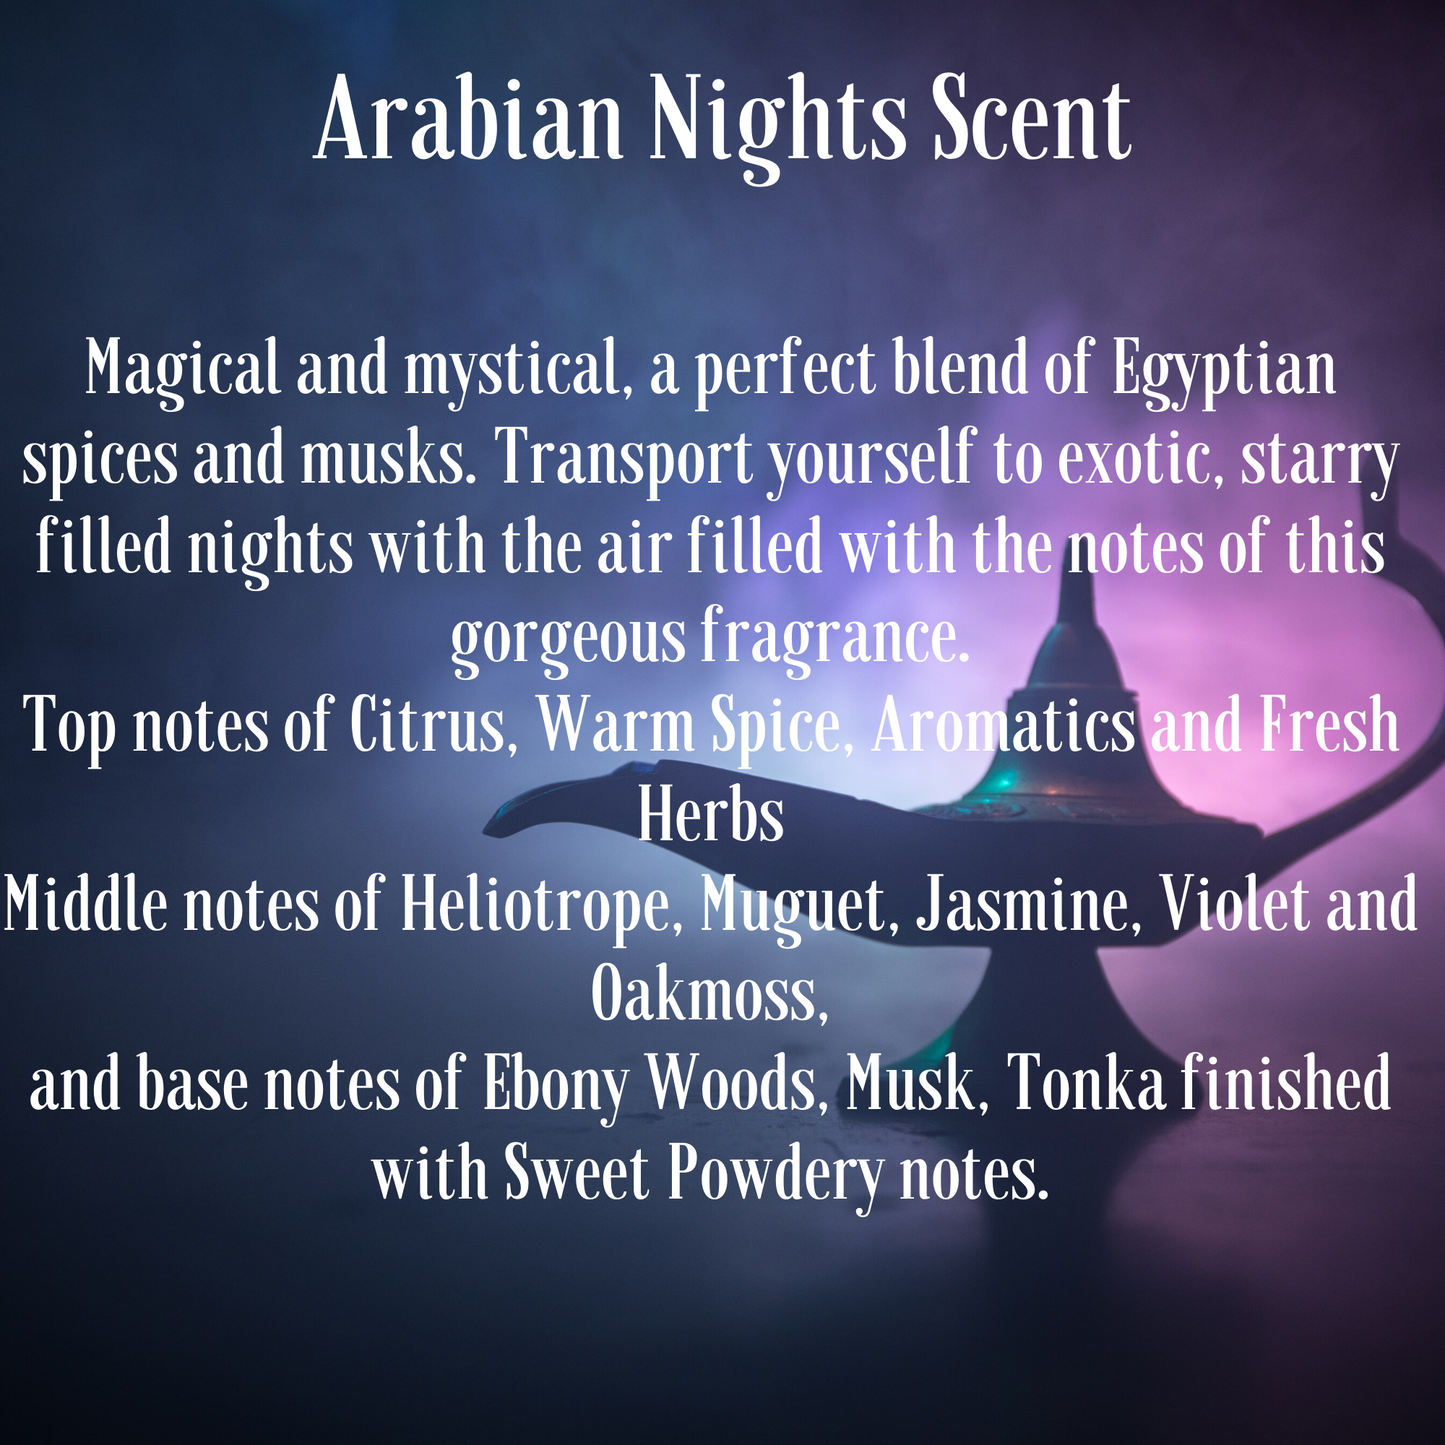 Arabian Nights Scented Palm Wax Medium Jar Candle 285g/10oz